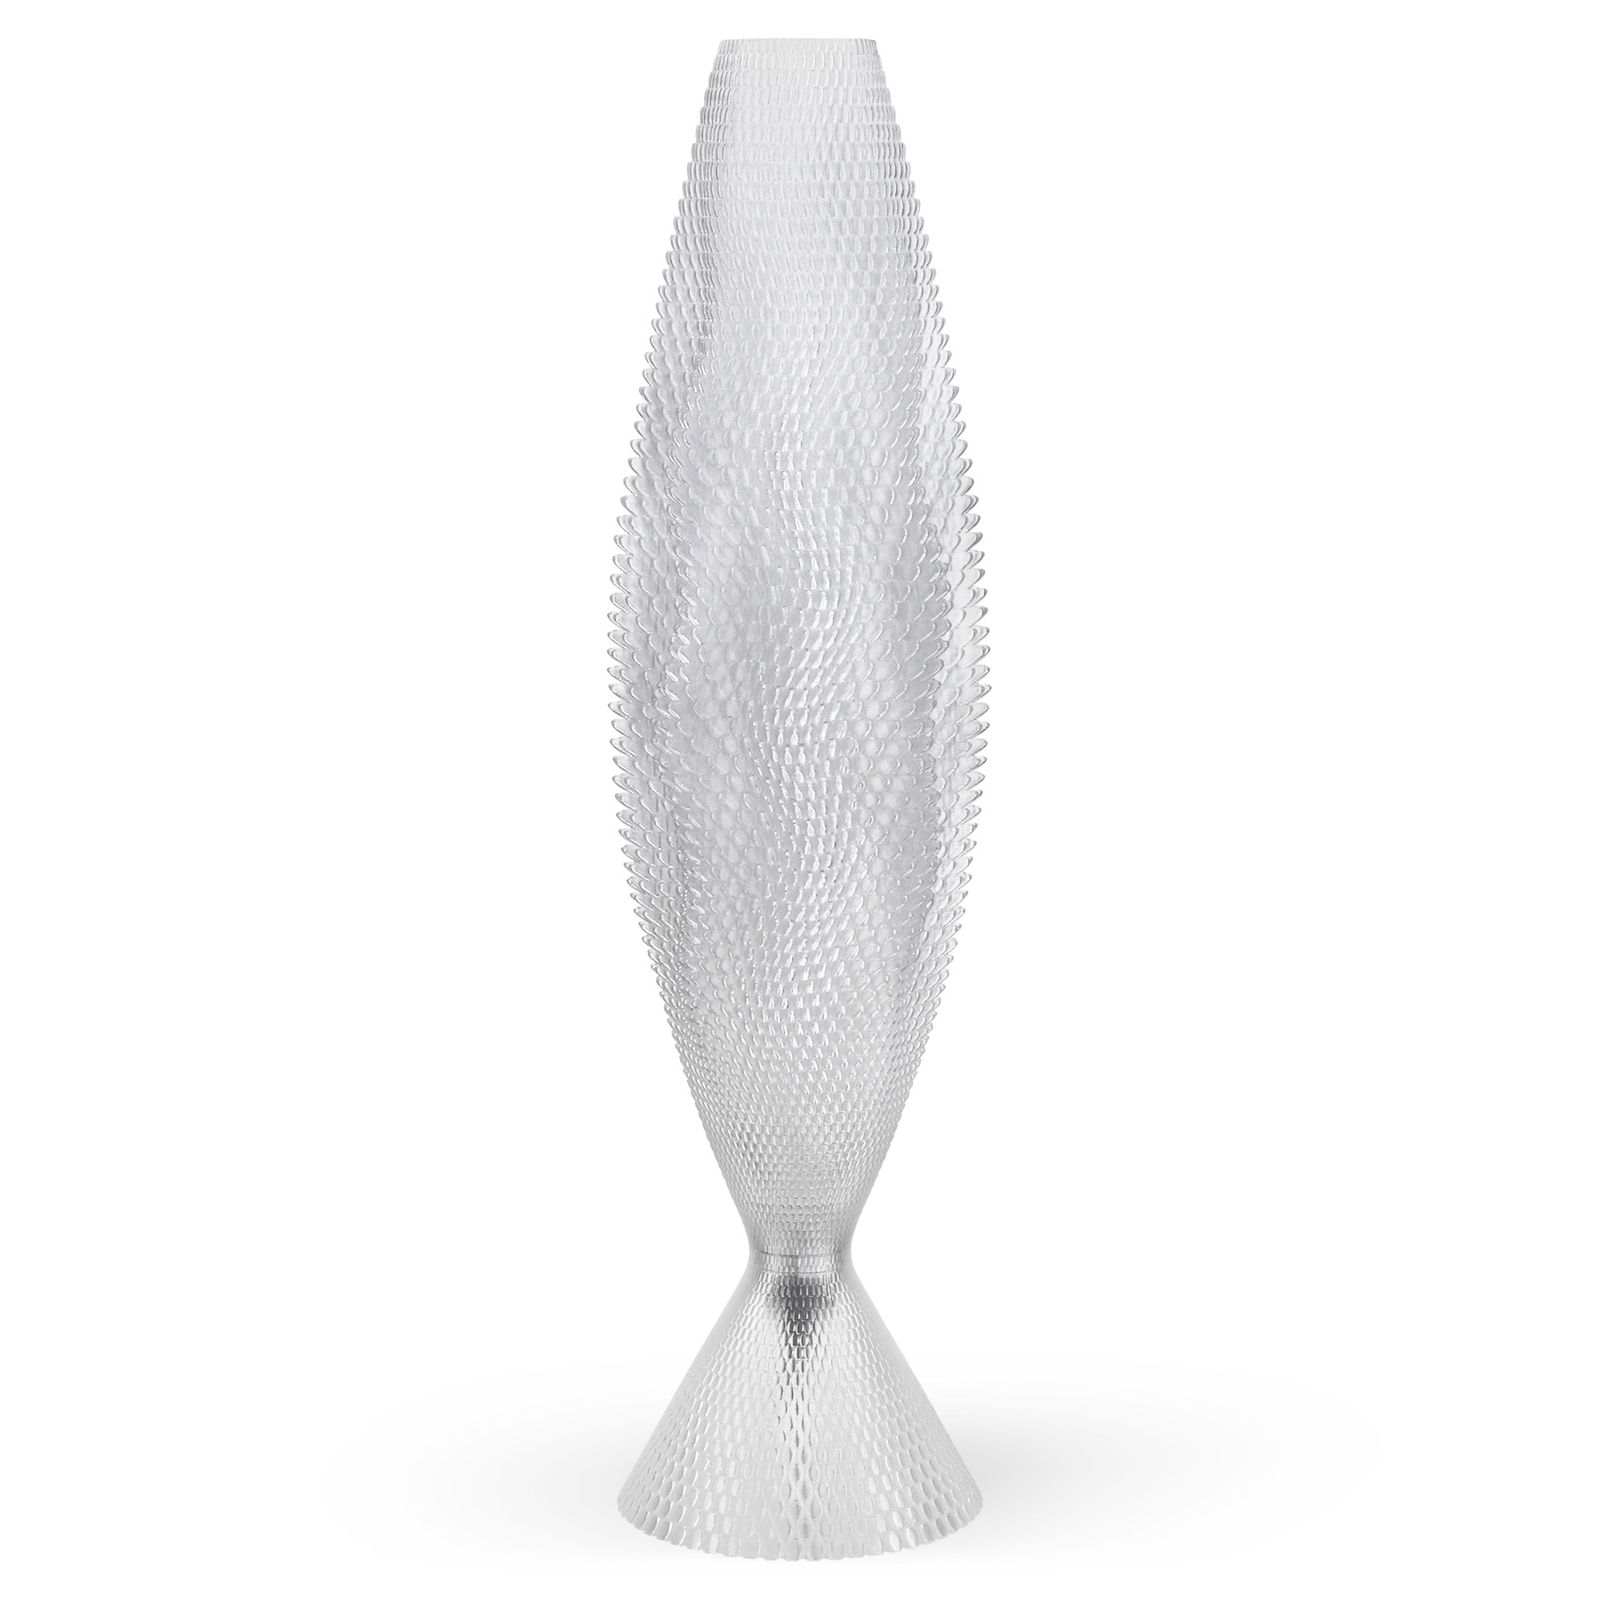 Koral bordslampa tillverkad av biomaterial, kristallklar 65 cm